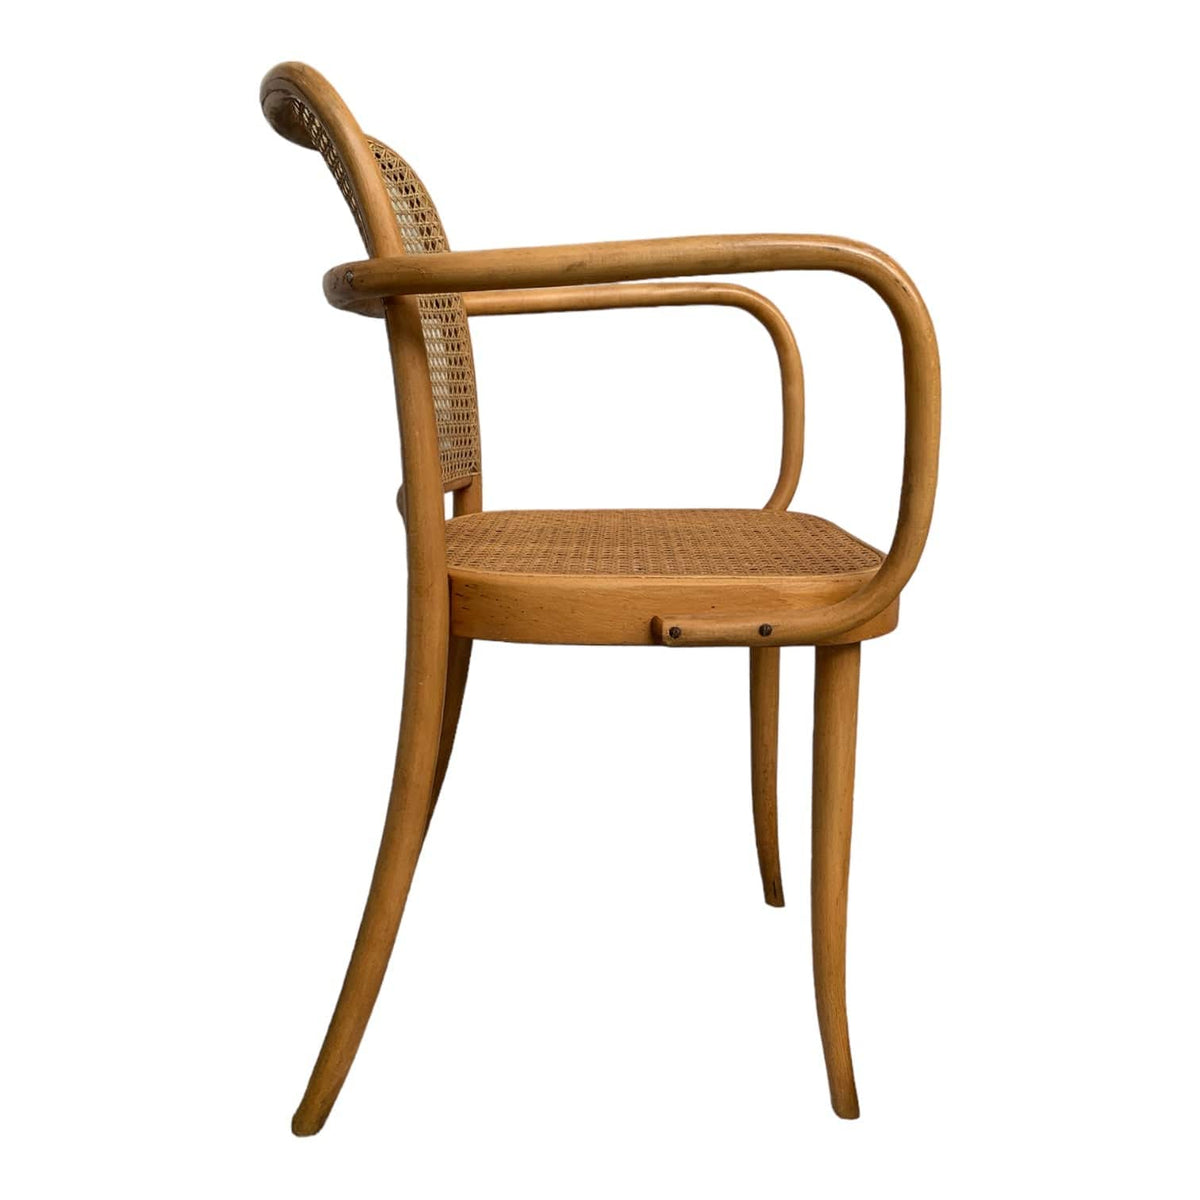 Original Joseph Hoffman Chair